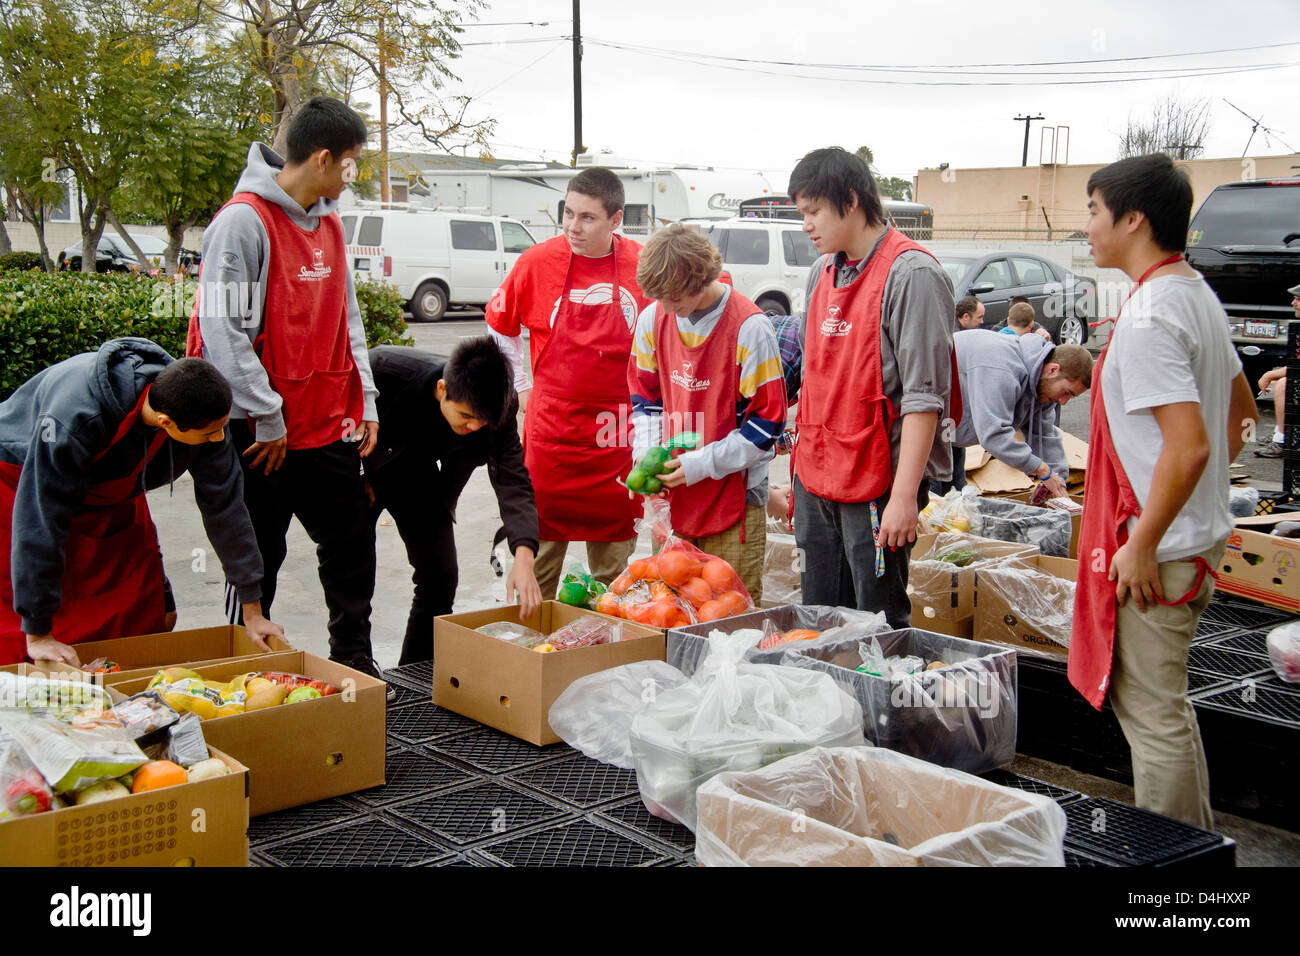 Mittelklasse-gemeinnützige freiwillige Pech bei der Bereitstellung von Essen in Costa Mesa, CA, Suppenküche für Obdachlose zu ernähren. Stockfoto